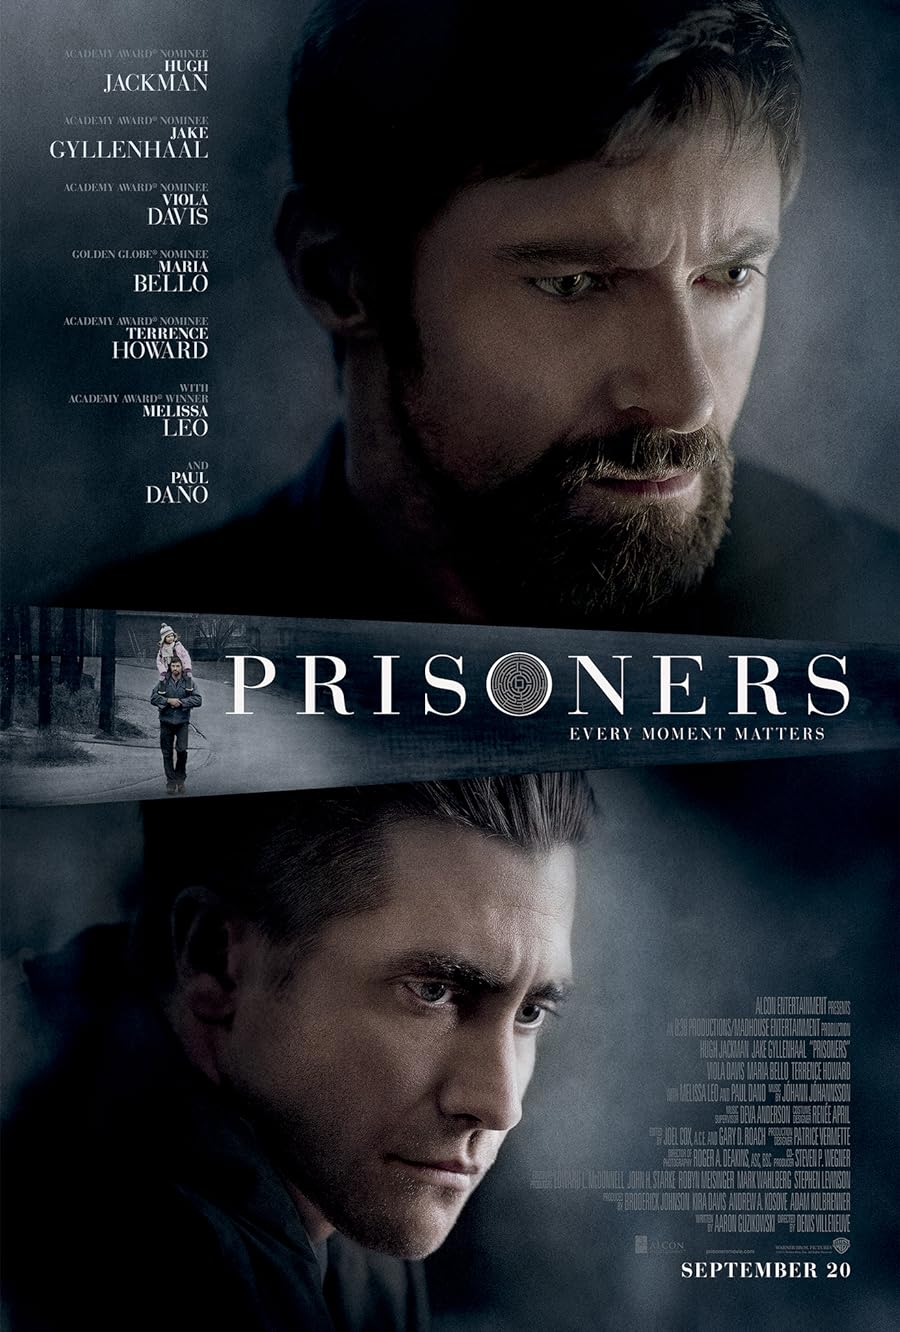 دانلود فیلم Prisoners 2013